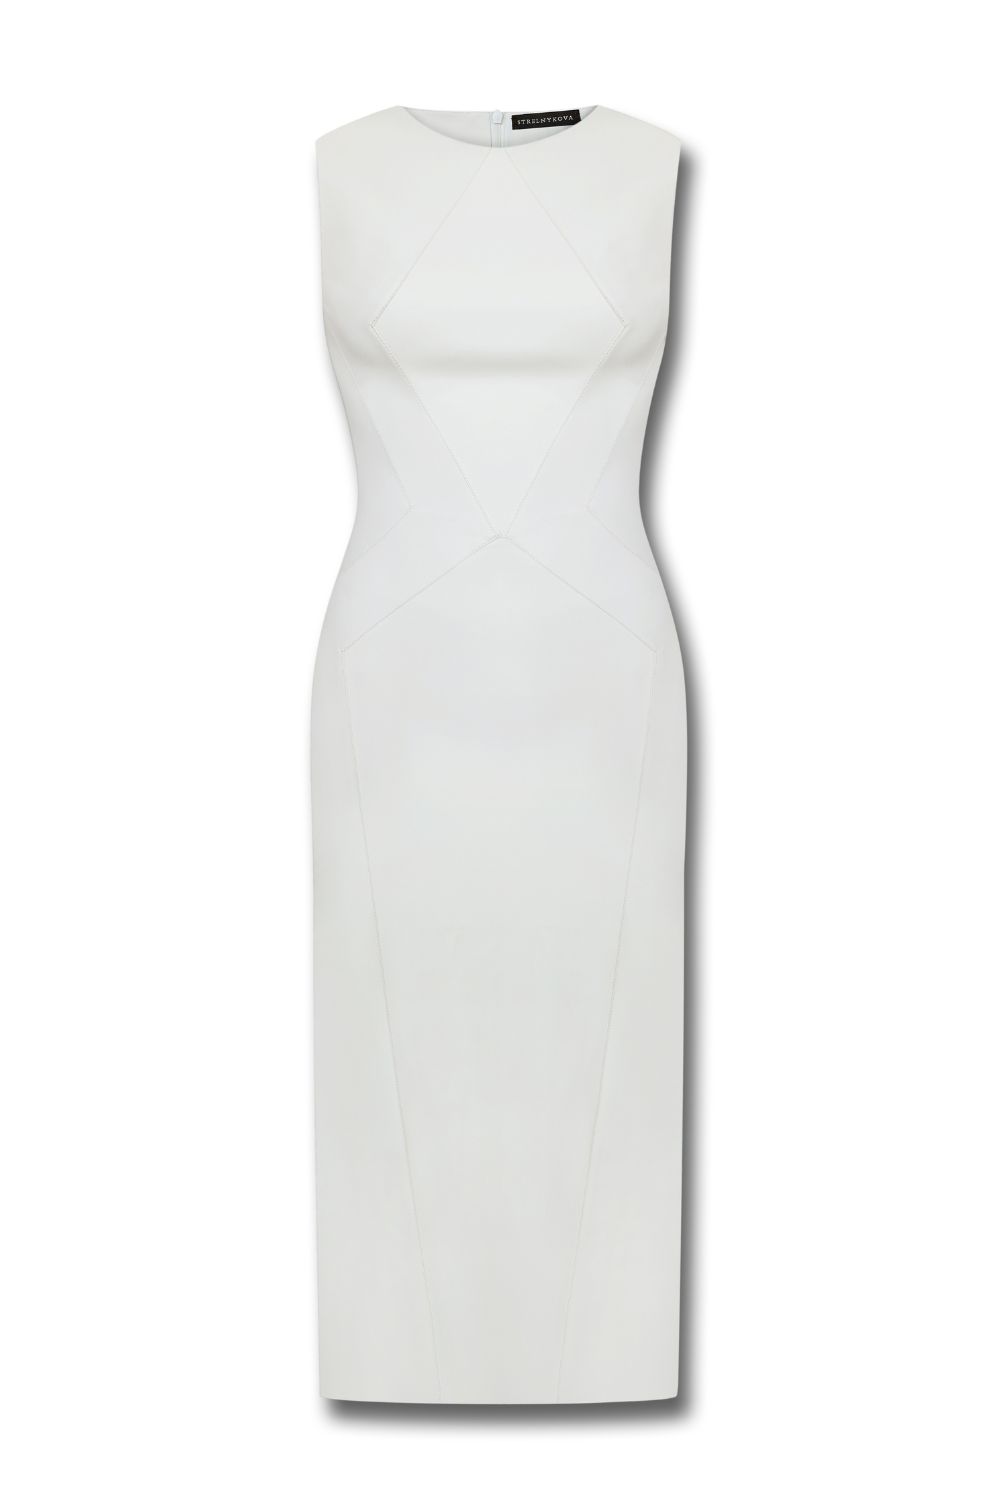 A017-813 Сукня з еко-шкіри біла (STRELNYKOVA)